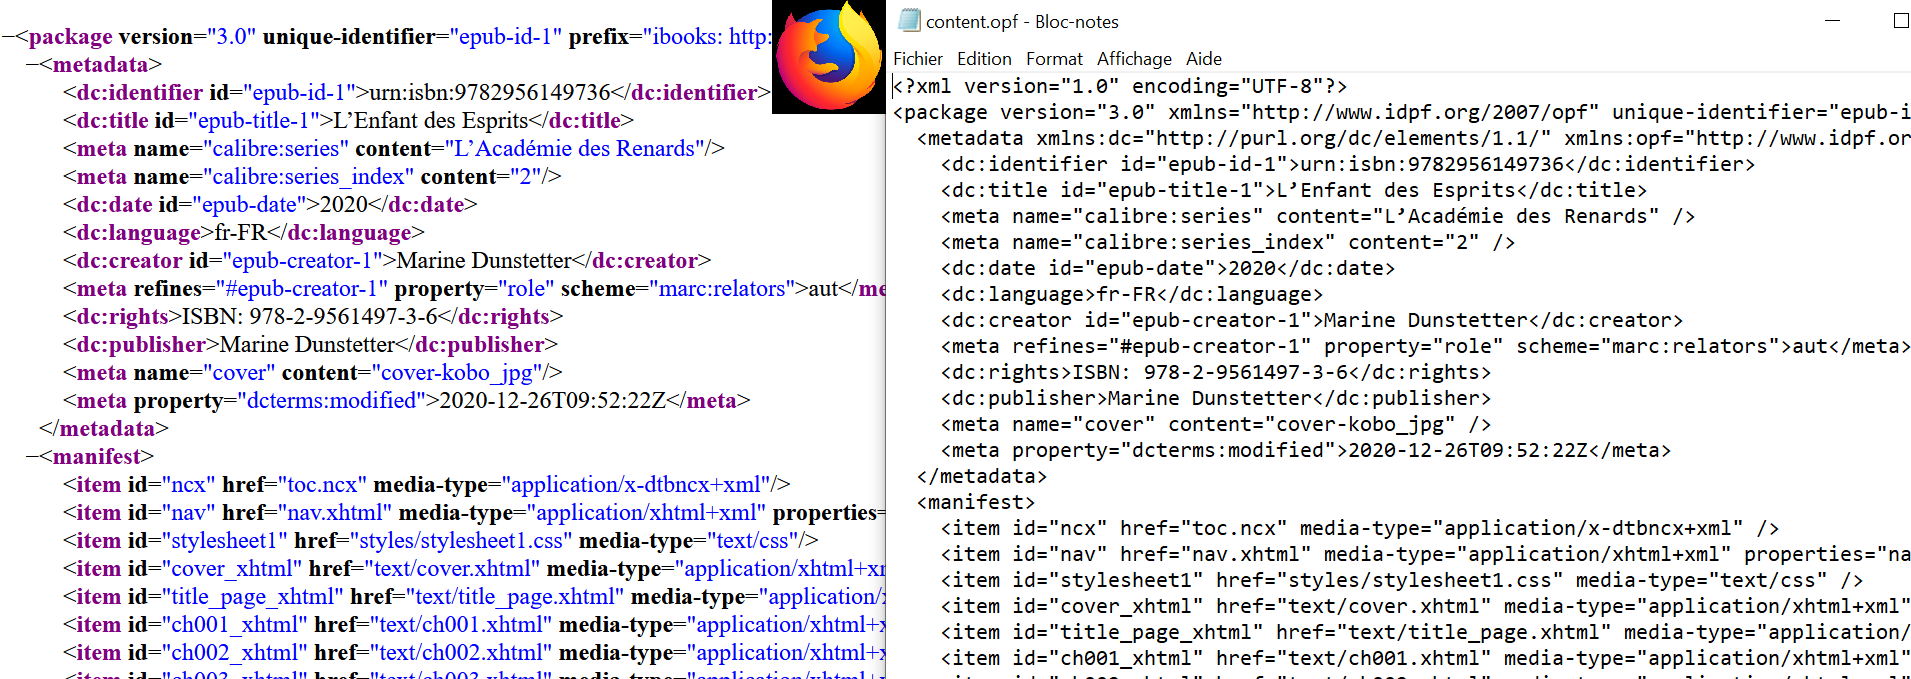 Le contenu du fichier OPF de "L'Enfant des Esprits". A gauche dans Firefox. A droite dans le Bloc-Notes de Windows.